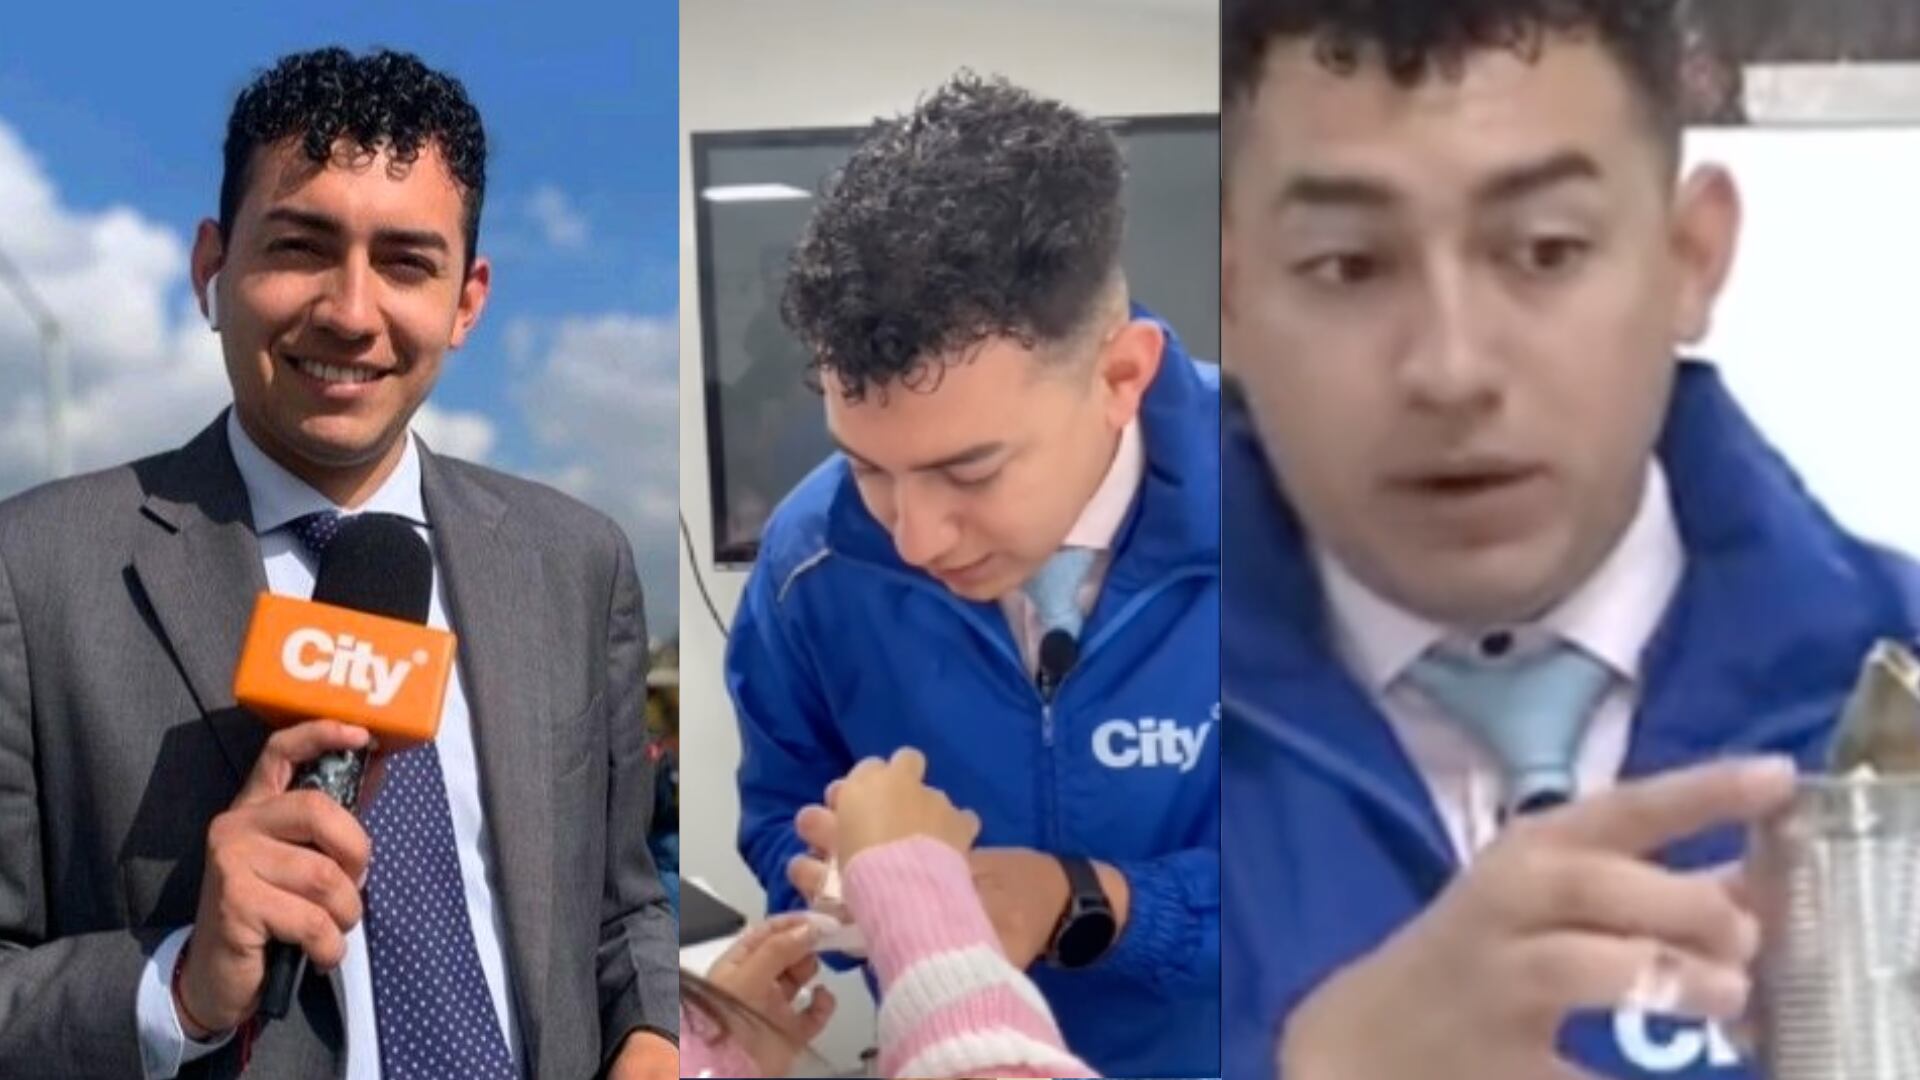 Juan David Ocampo City TV terminó cortándose tres dedos al abrir una lata en vivo